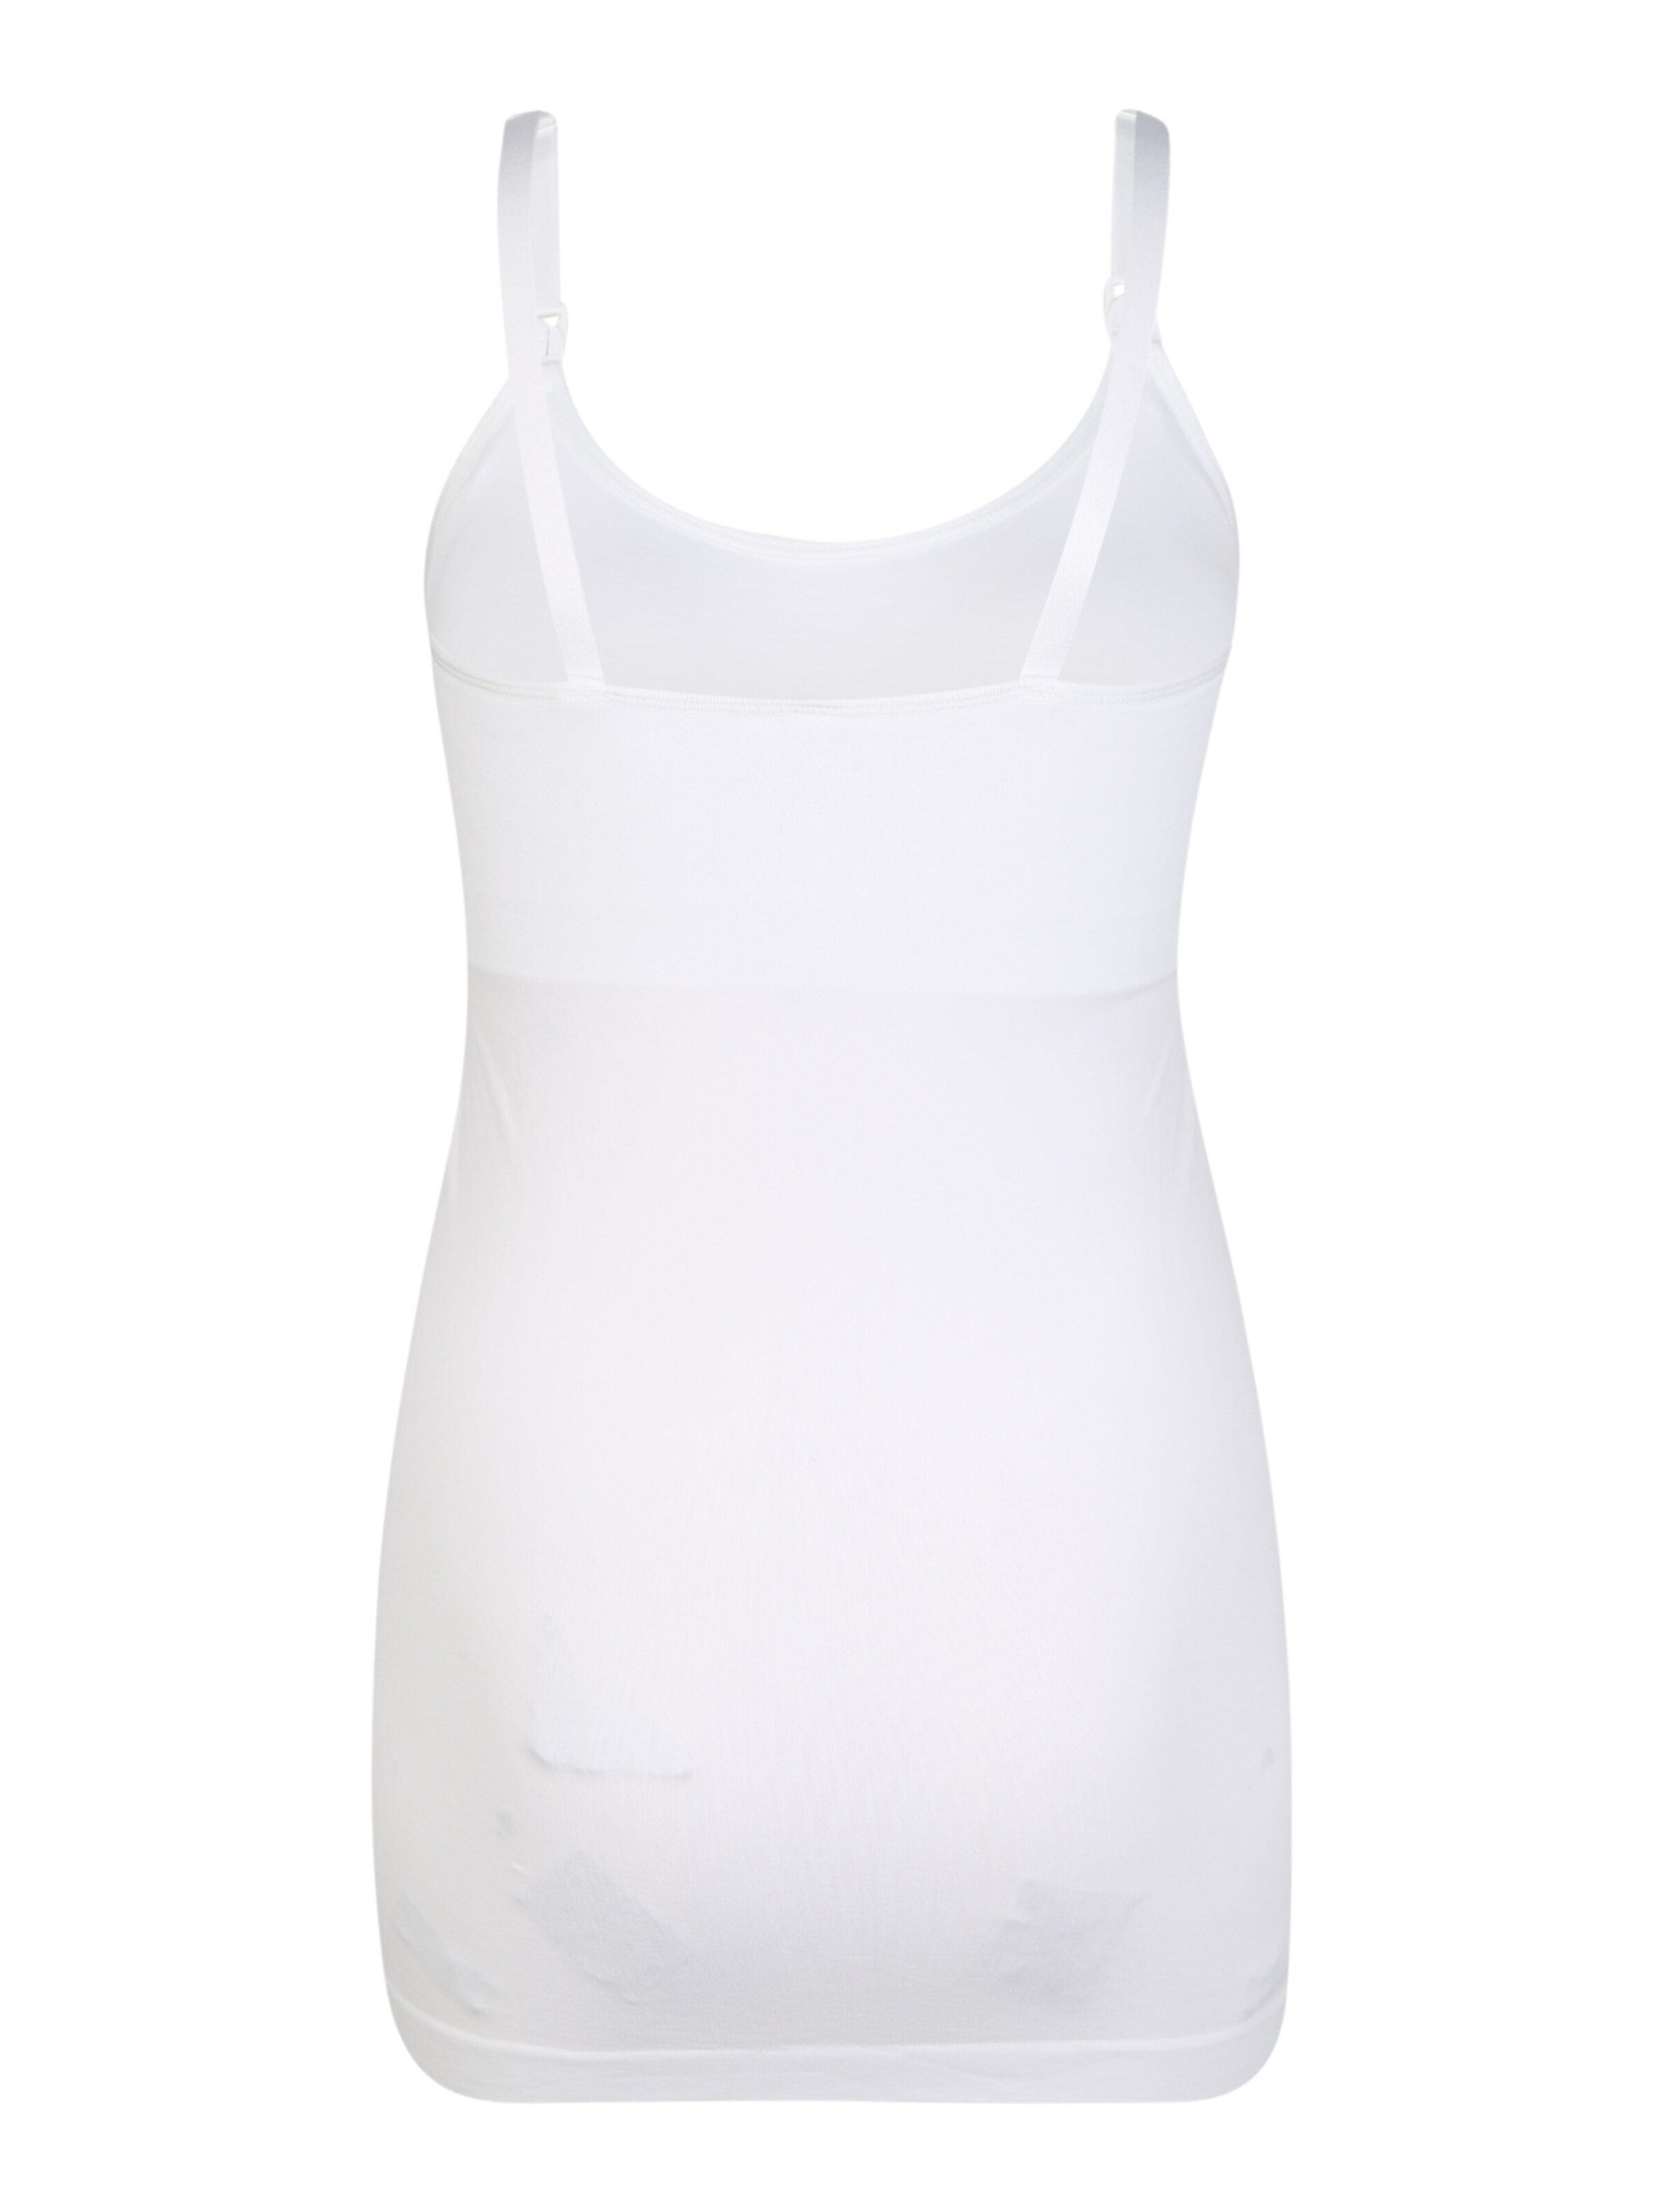 Frauen Umstandsmode Bravado Designs Unterhemd in Weiß - VH92401